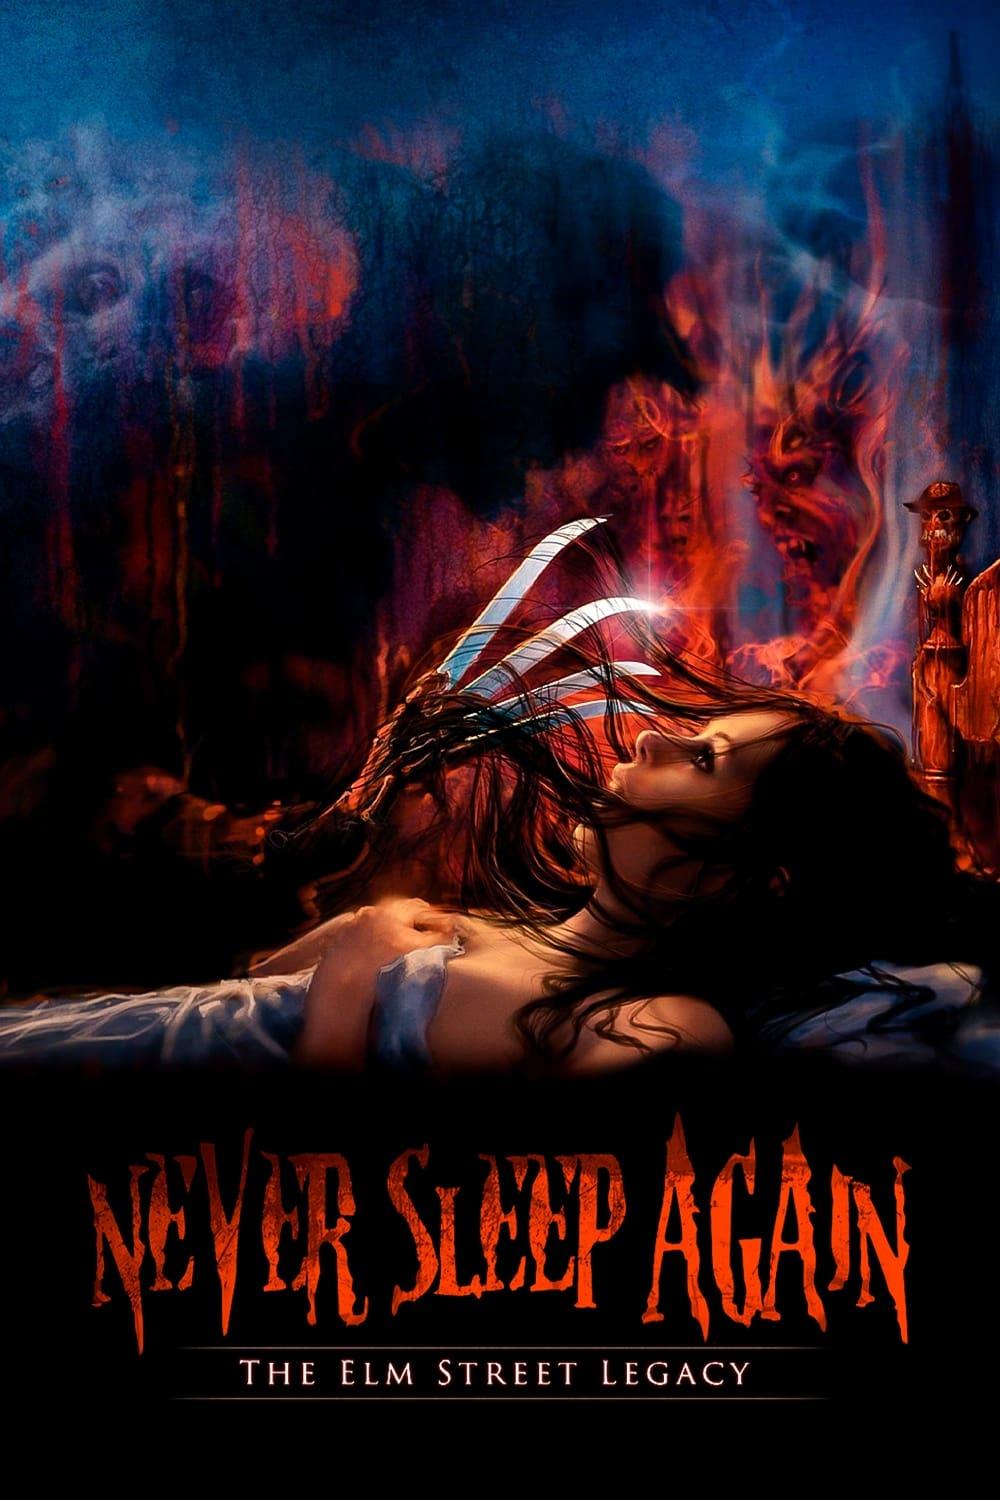 Never Sleep Again: The Elm Street Legacy poster